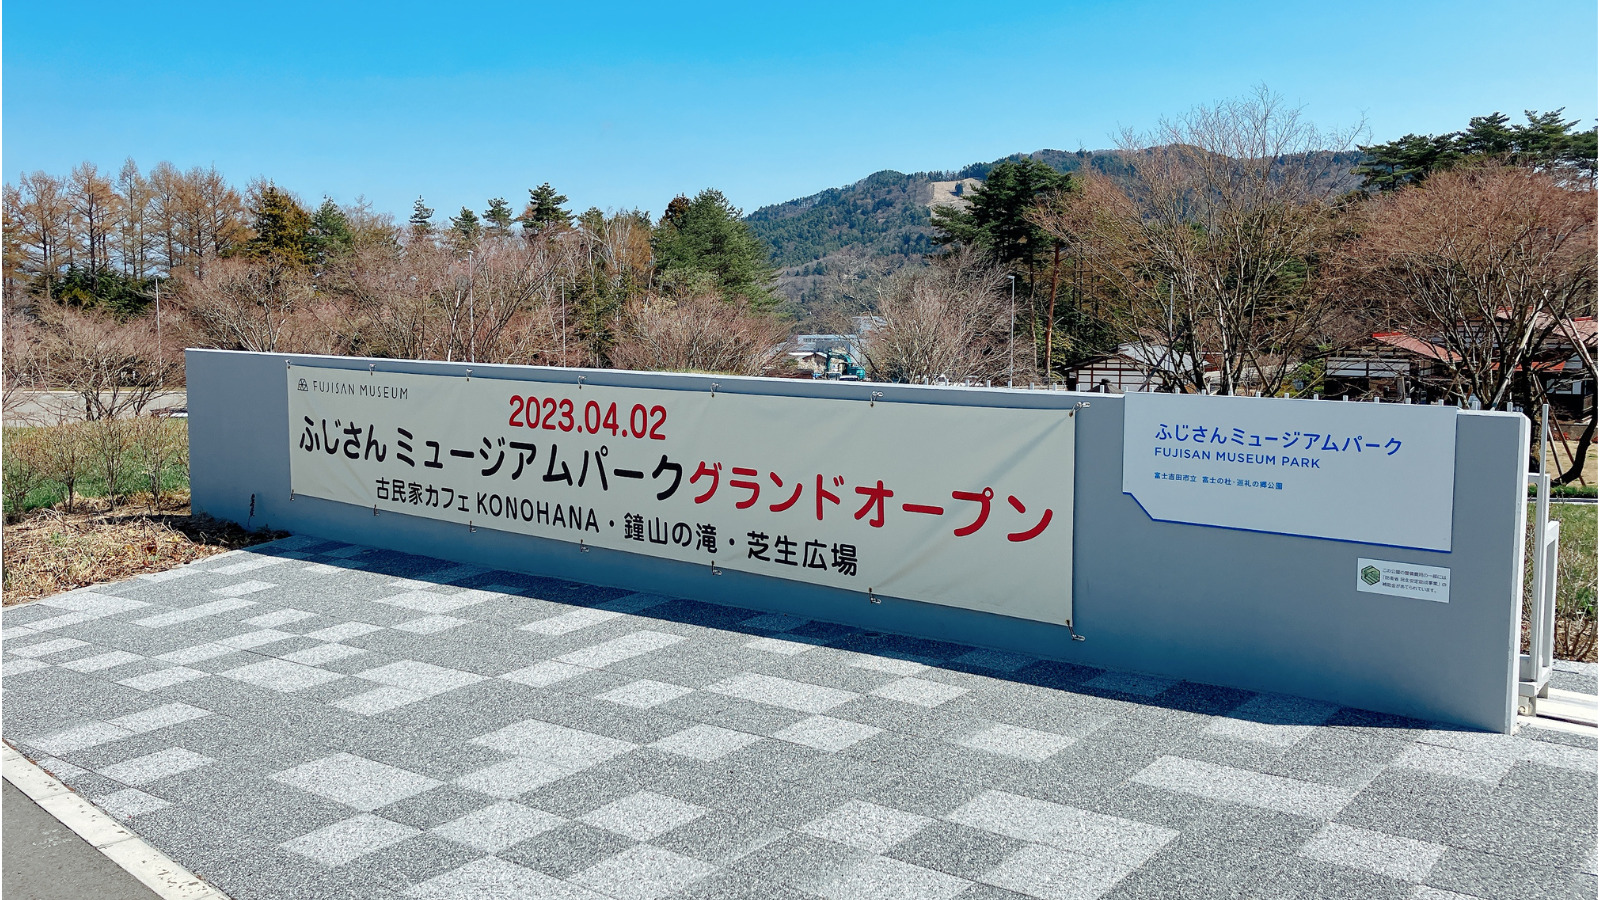 ふじさんミュージアムパークが2023年4月2日にオープン